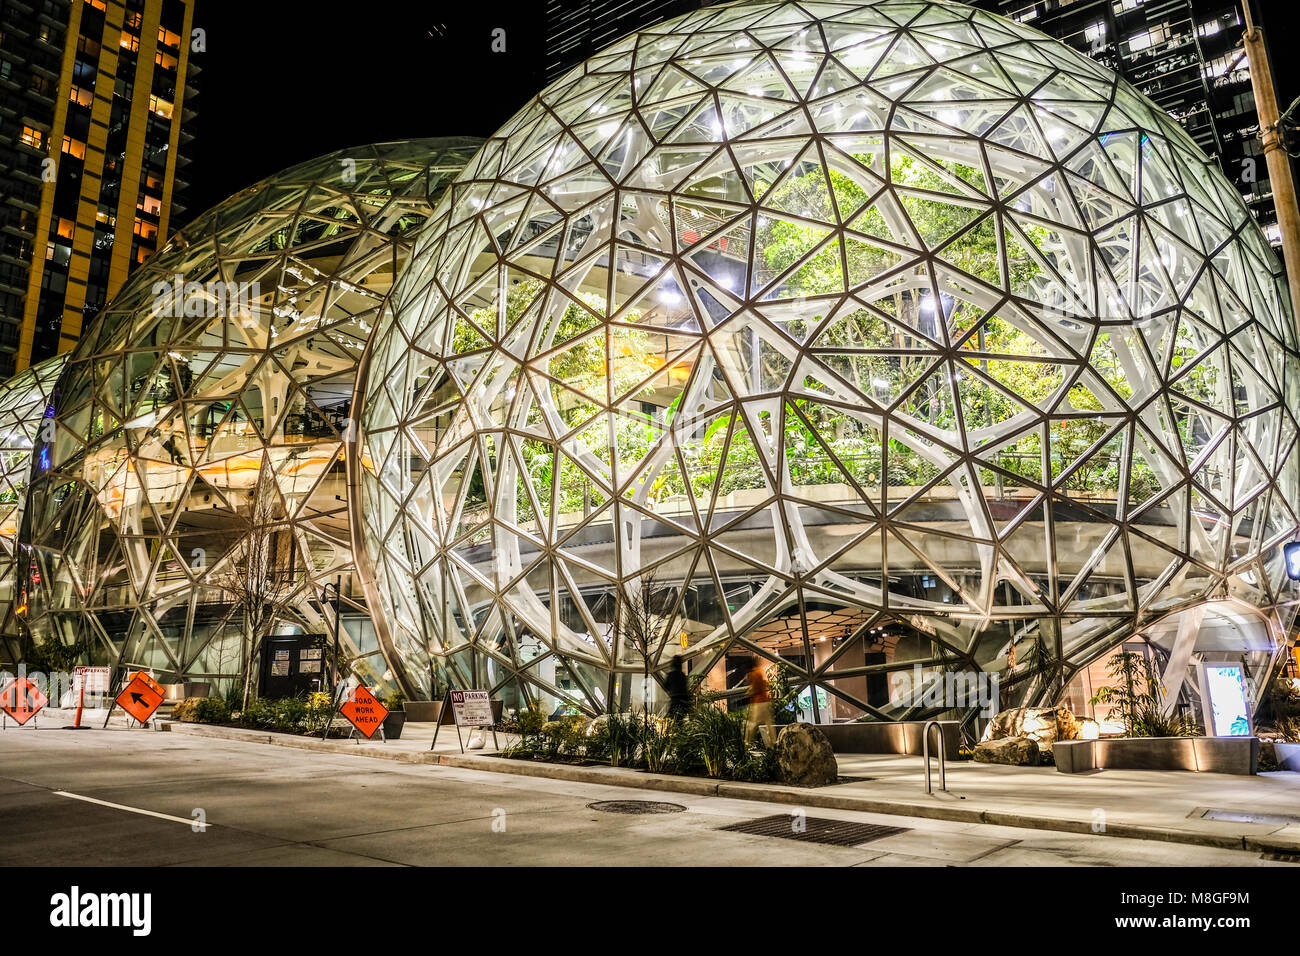 Le dôme de verre au siège de sphères sur Amazon nuit au centre-ville de Seattle Banque D'Images